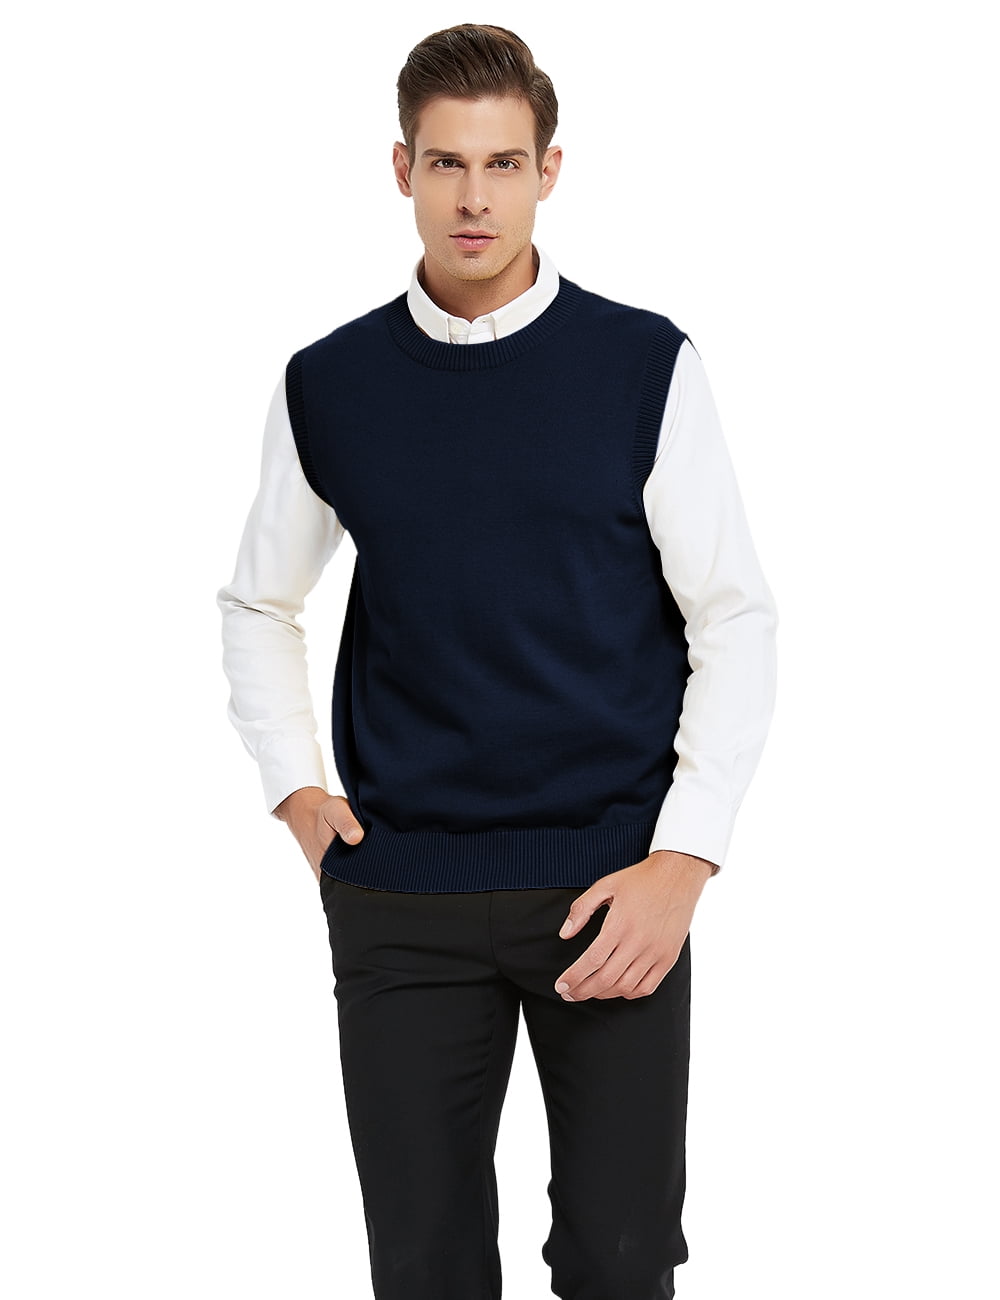 CC Cotton Blend Slim Fit V Neck Sweater Vest for Men Lightweight Breathable V Neck Vests for Men 